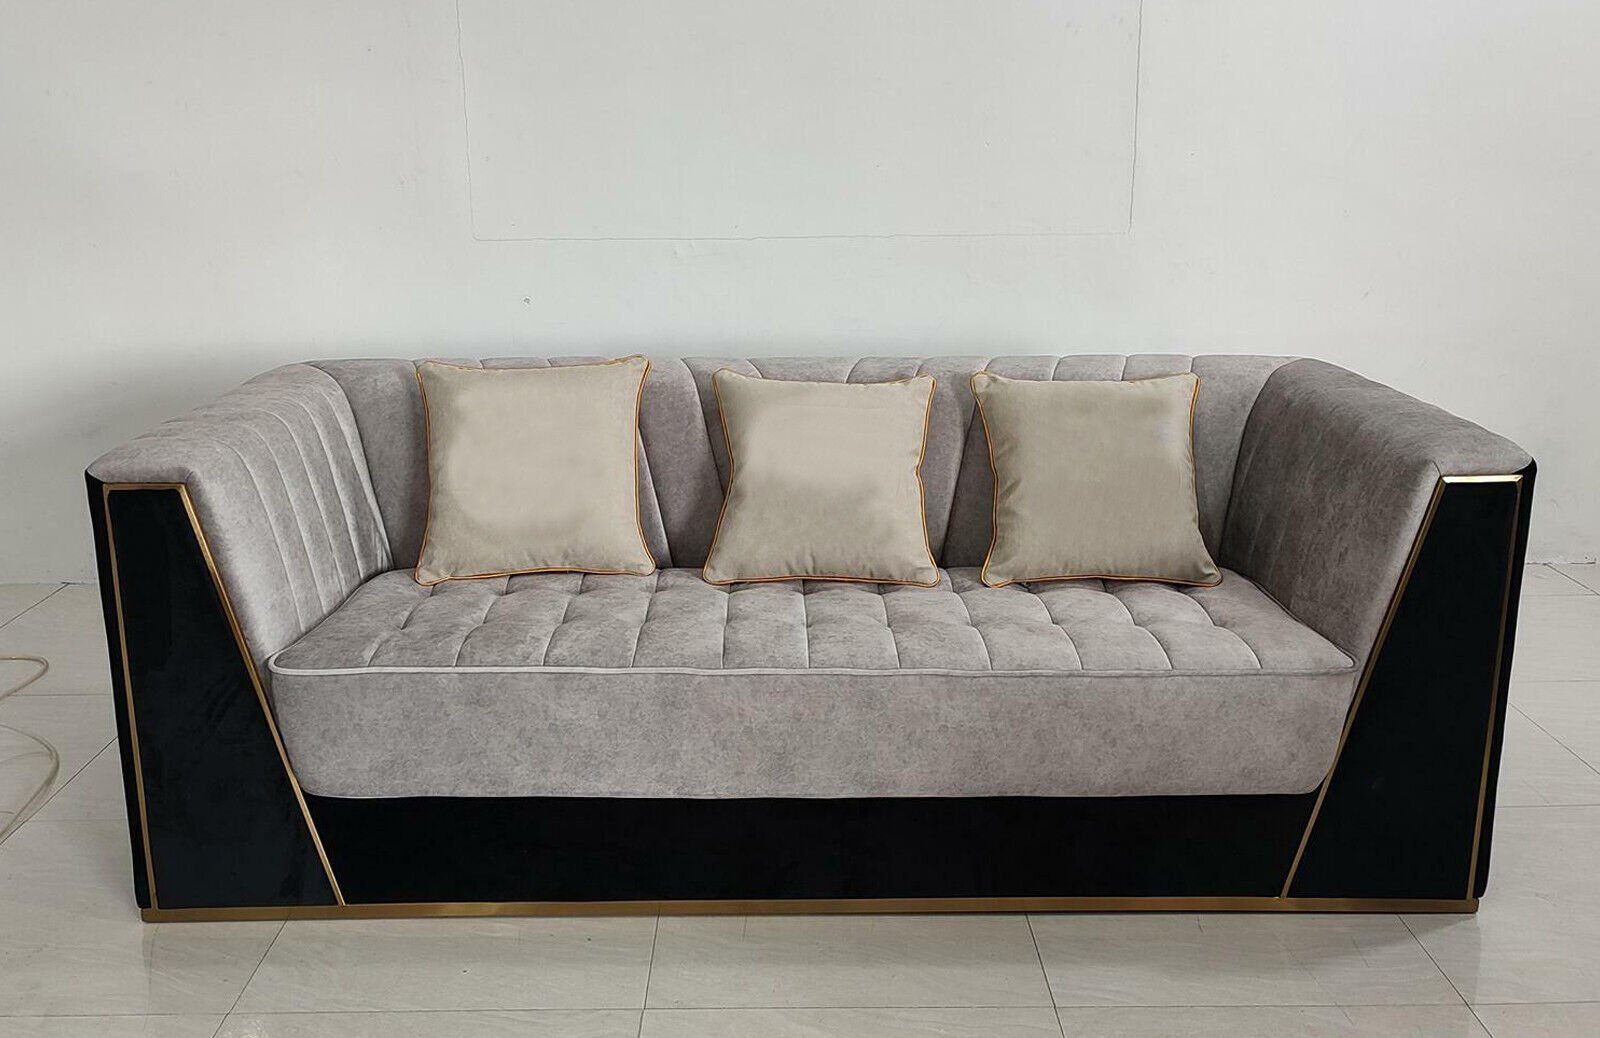 JVmoebel Sofa, Sofa 3 Sitzer Sofas Luxus Textil Polster Designer Möbel Dreisitzer